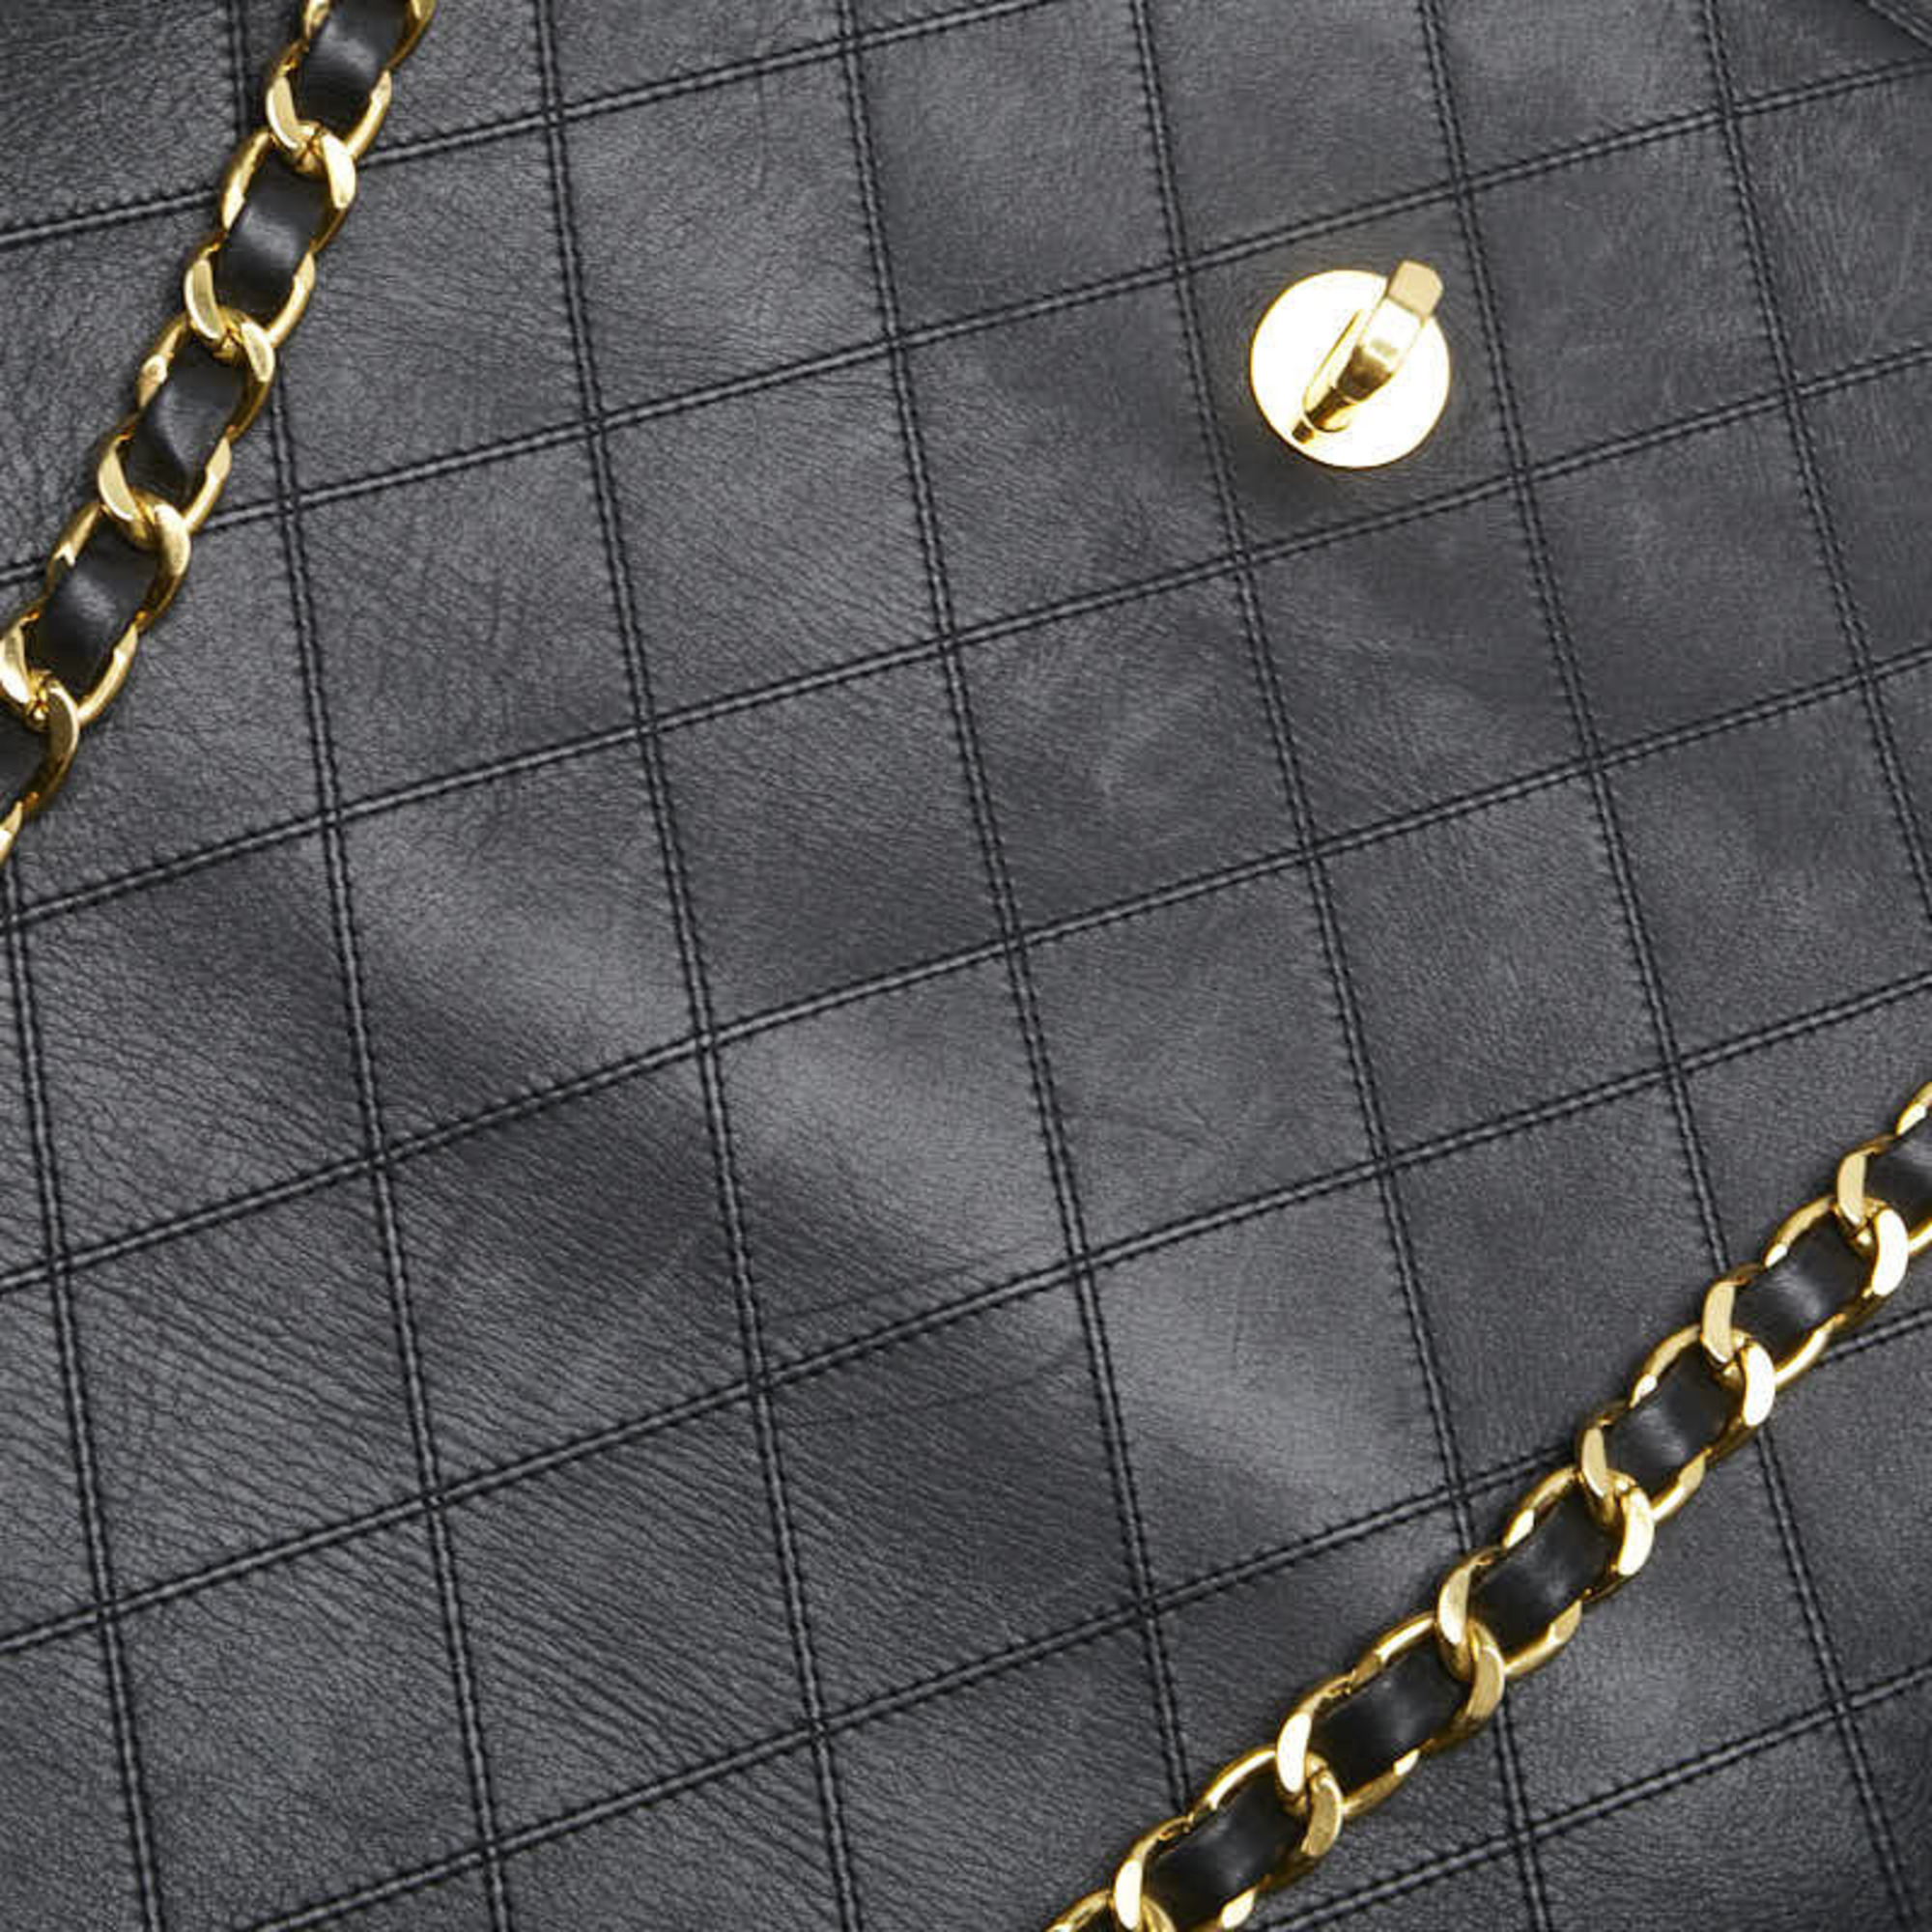 CHANEL Bicolor Coco Mark Chain Tote Bag Black Gold Lambskin Women's